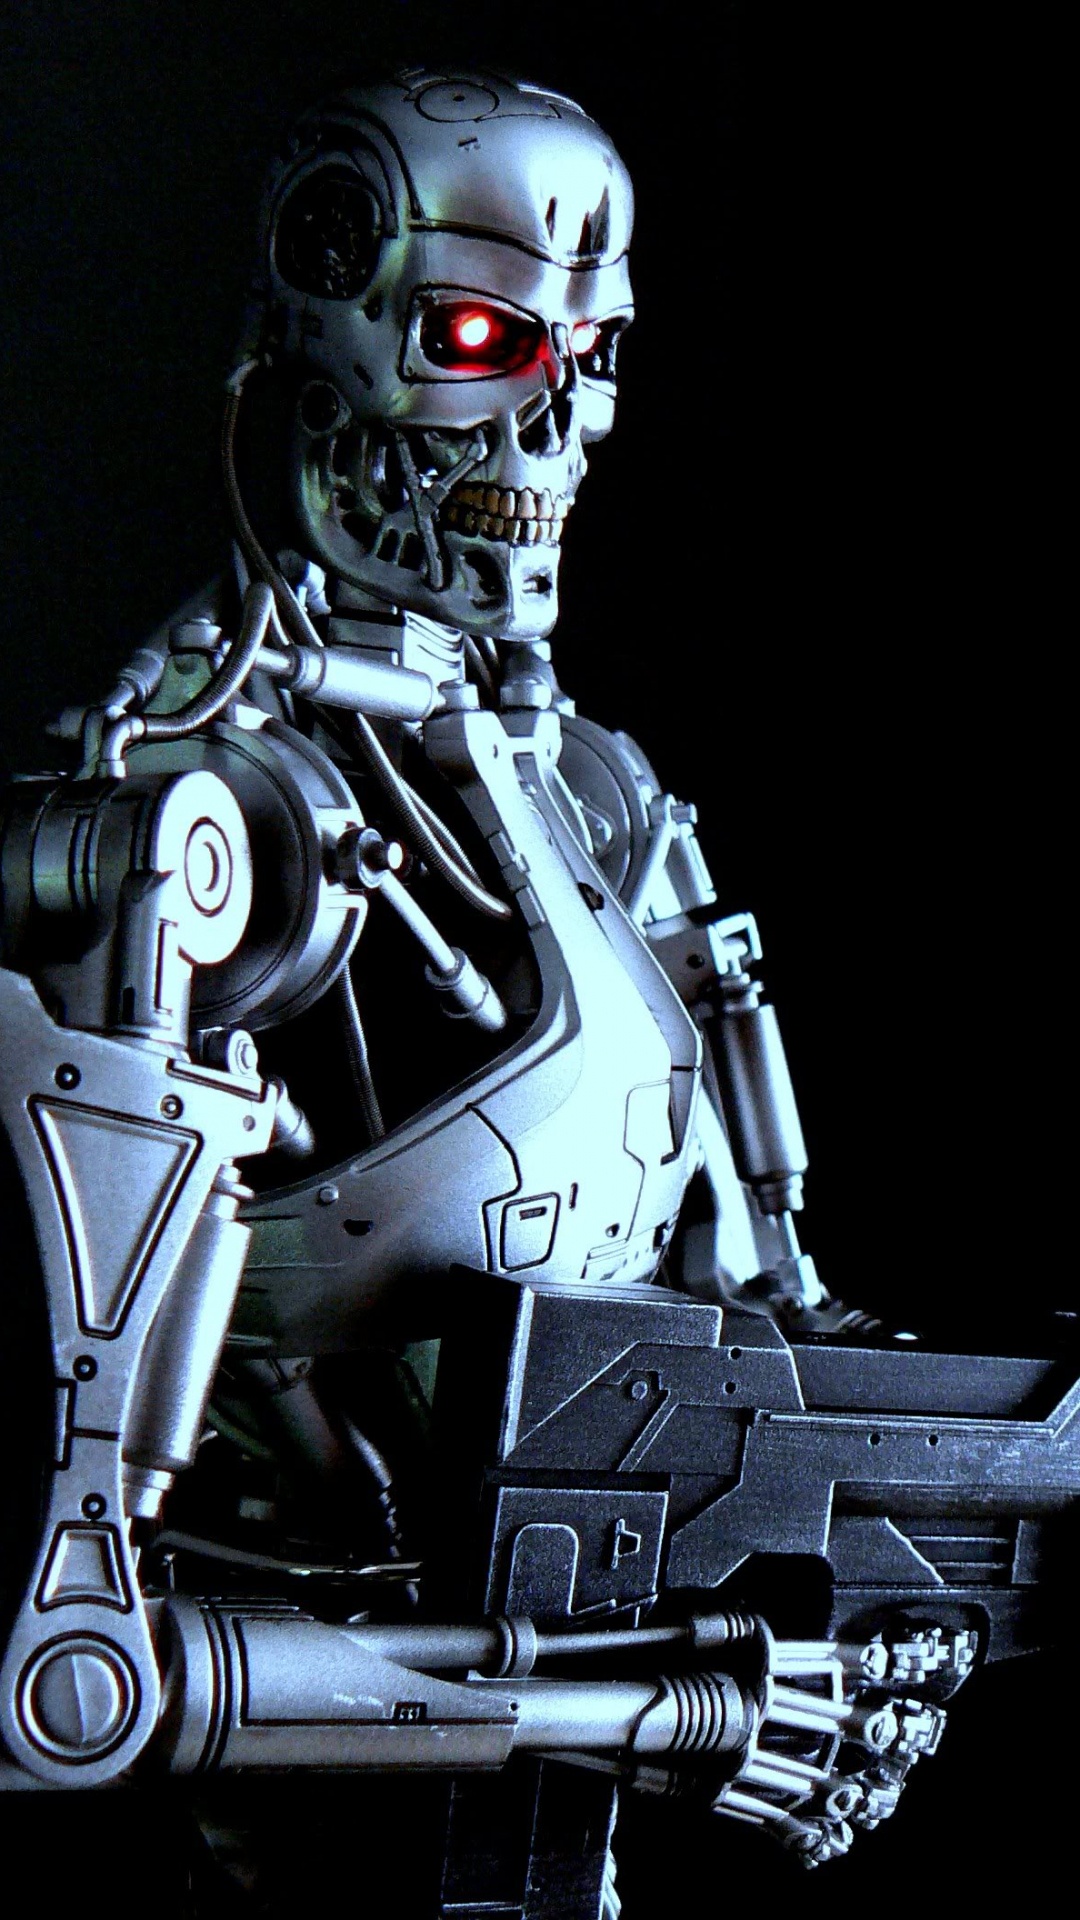 Gray Robot Holding Gun Illustration. Wallpaper in 1080x1920 Resolution